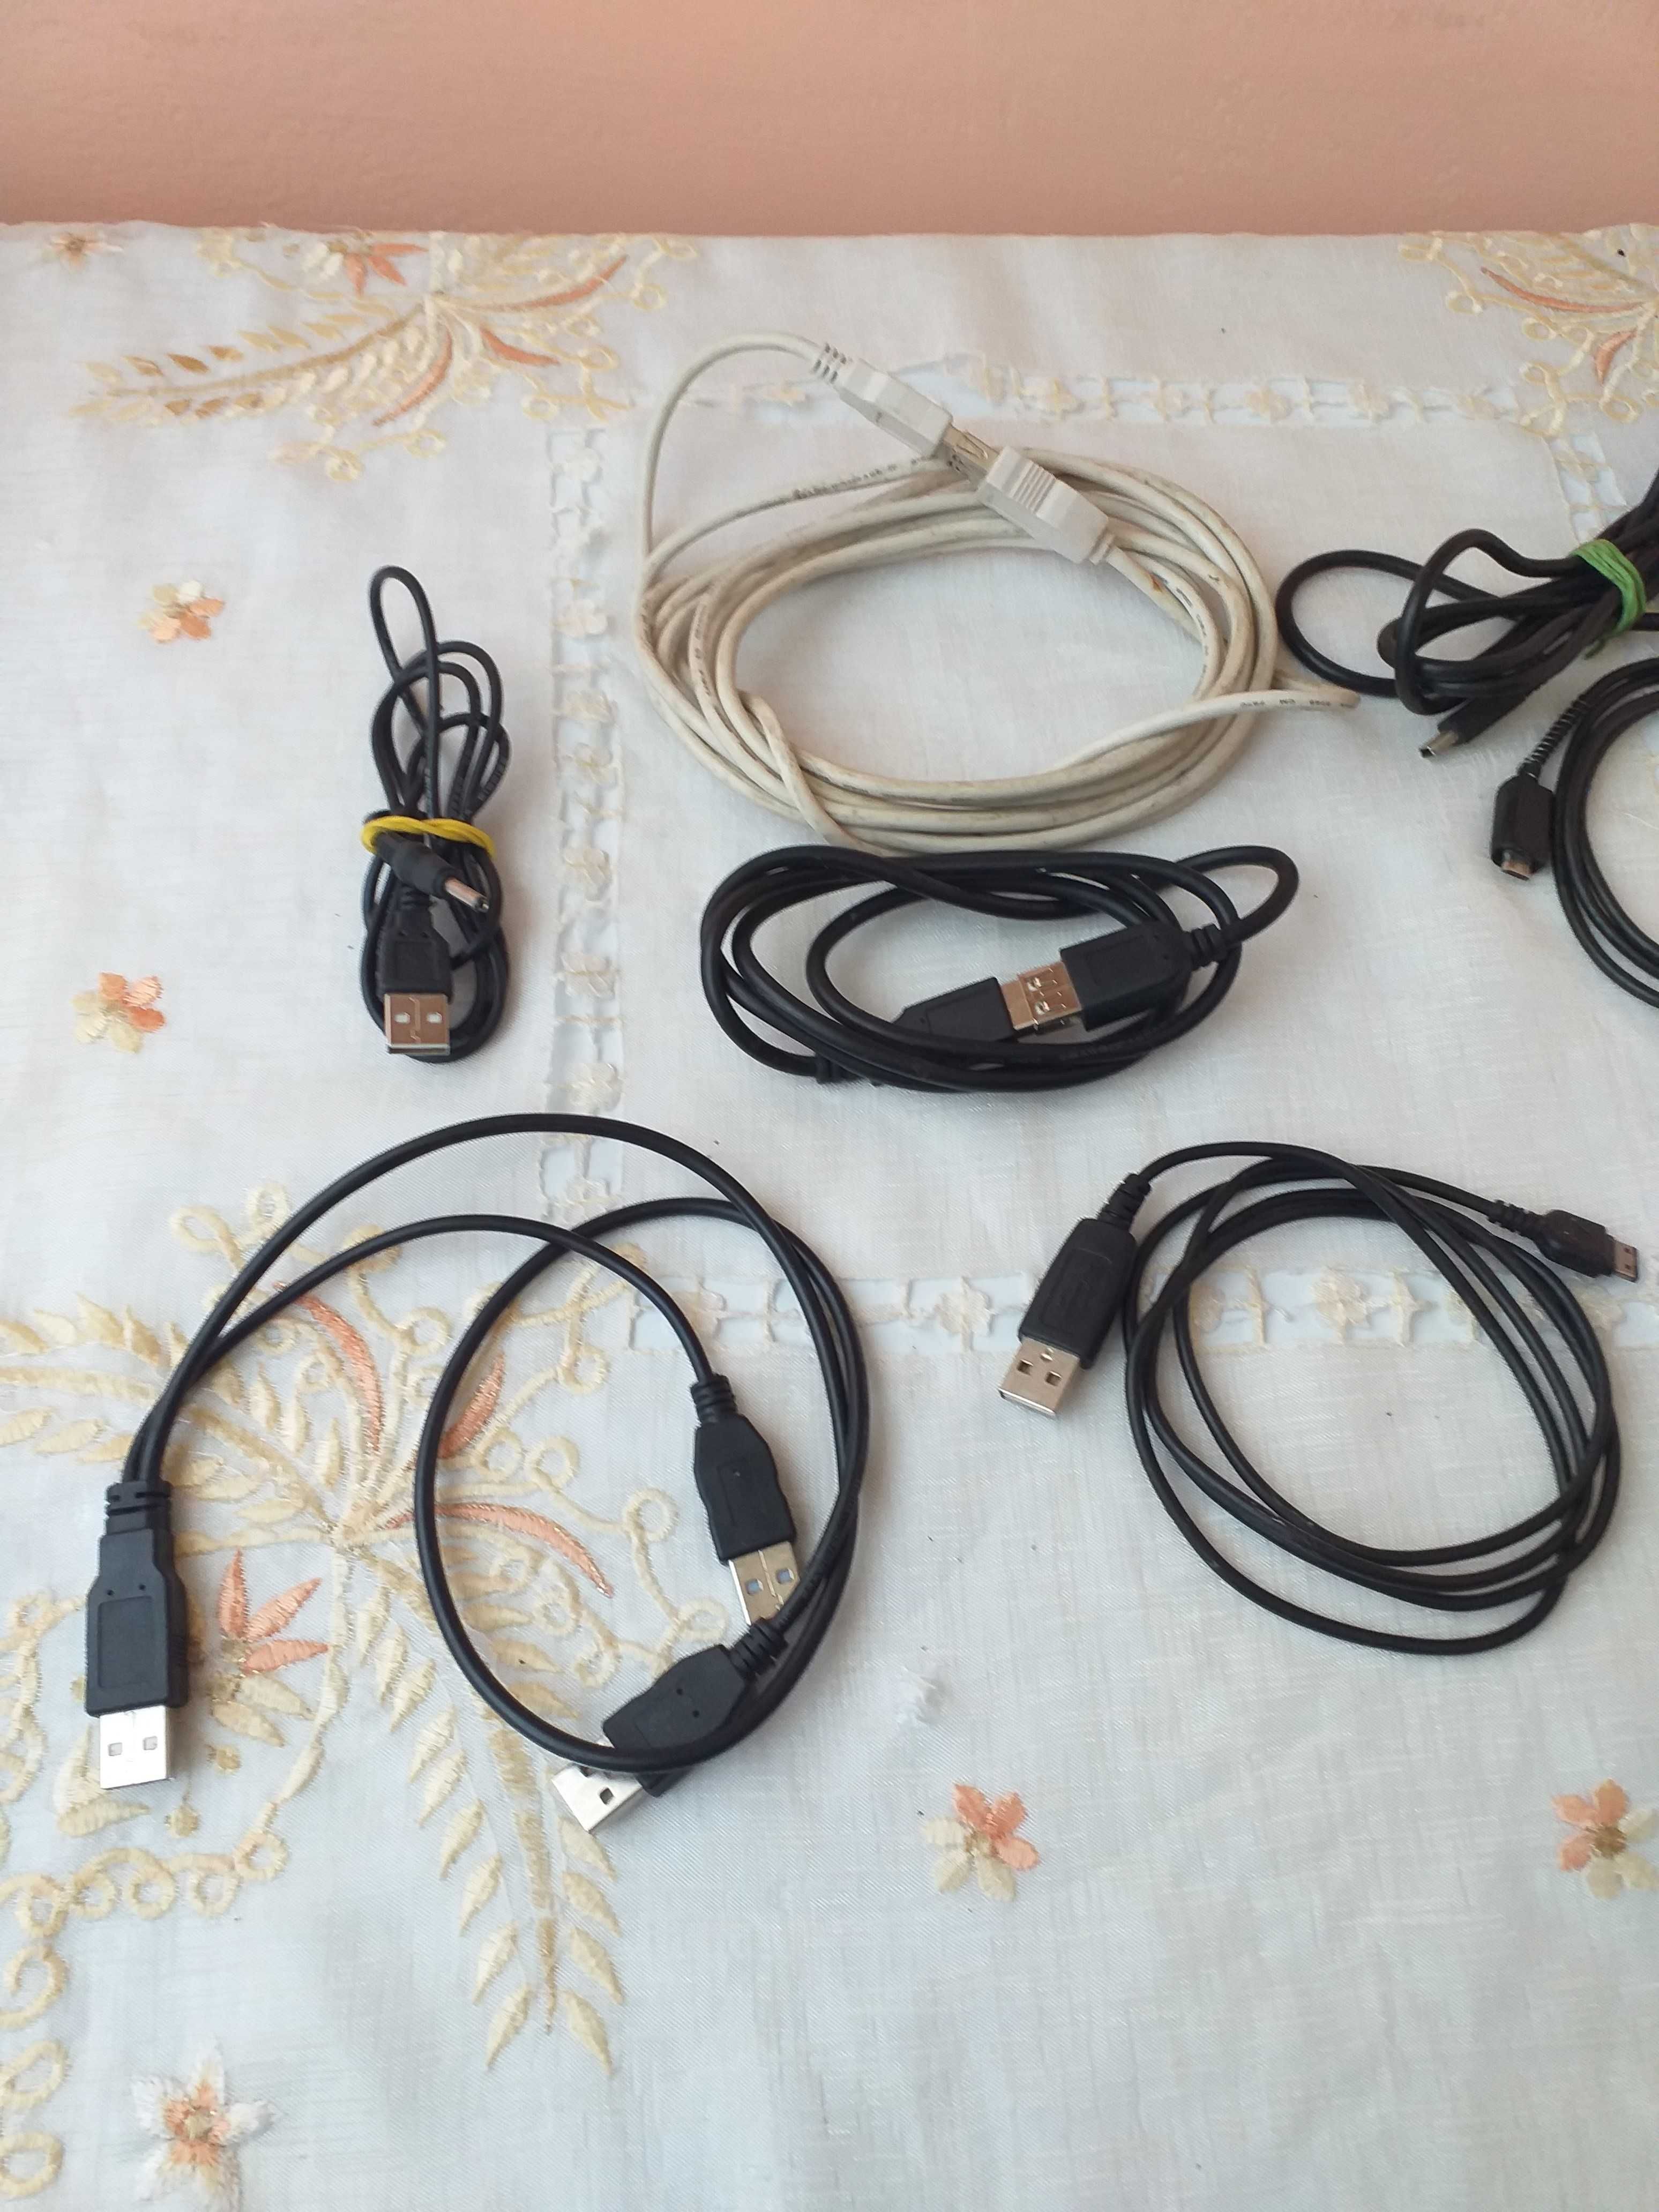 cablu usb mufa incarcare telefon+cablu boxe